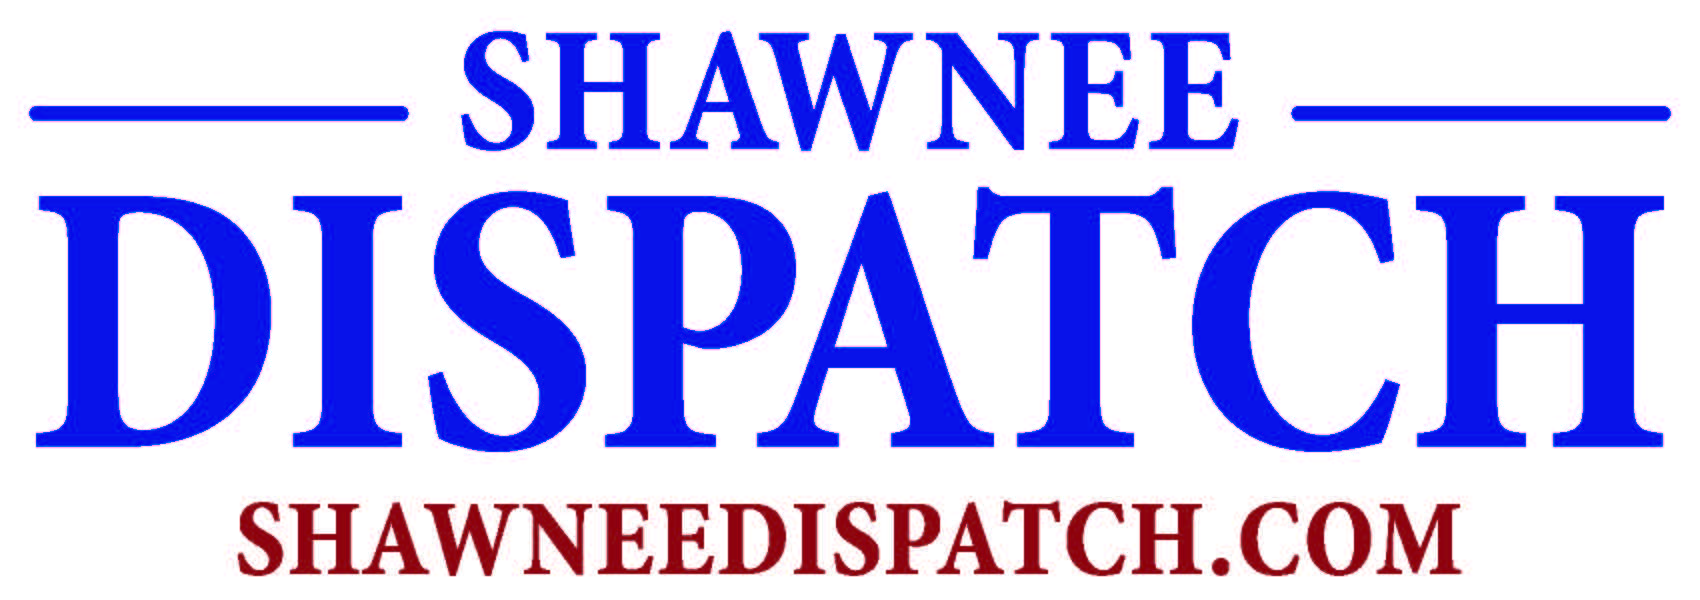 Dispatch Logo - Shawnee Dispatch Logo - Shawnee Chamber